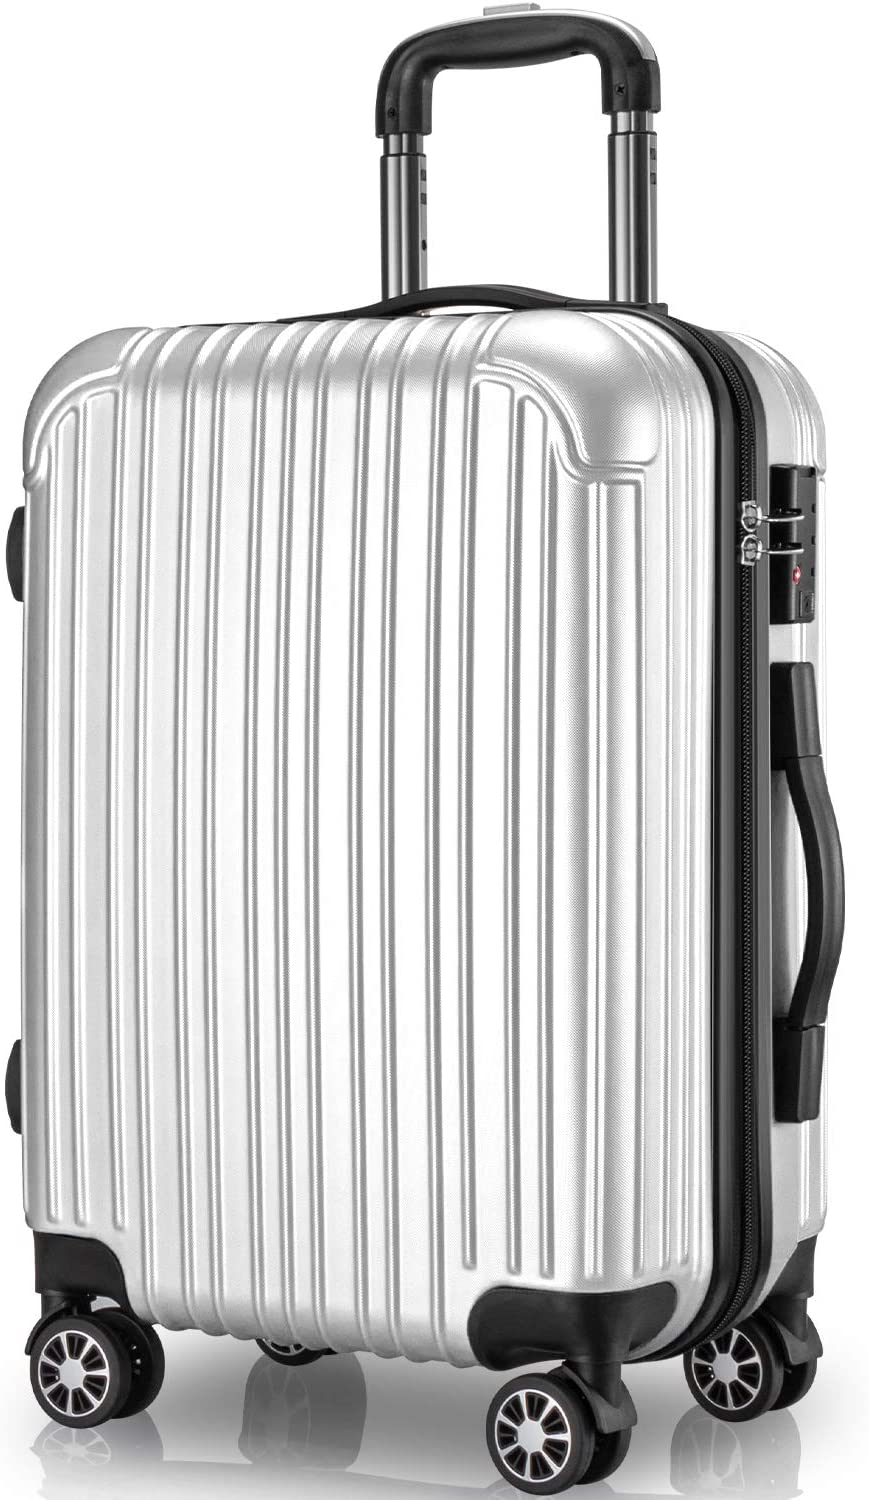 スーツケース キャリーケース 65L Mサイズ 大量収納 TSAロック キャリーバッグ ファスナー式 静音 4〜7泊 旅行 ビジネス 出張 カバン  バッグ 中型 軽量 おしゃれ